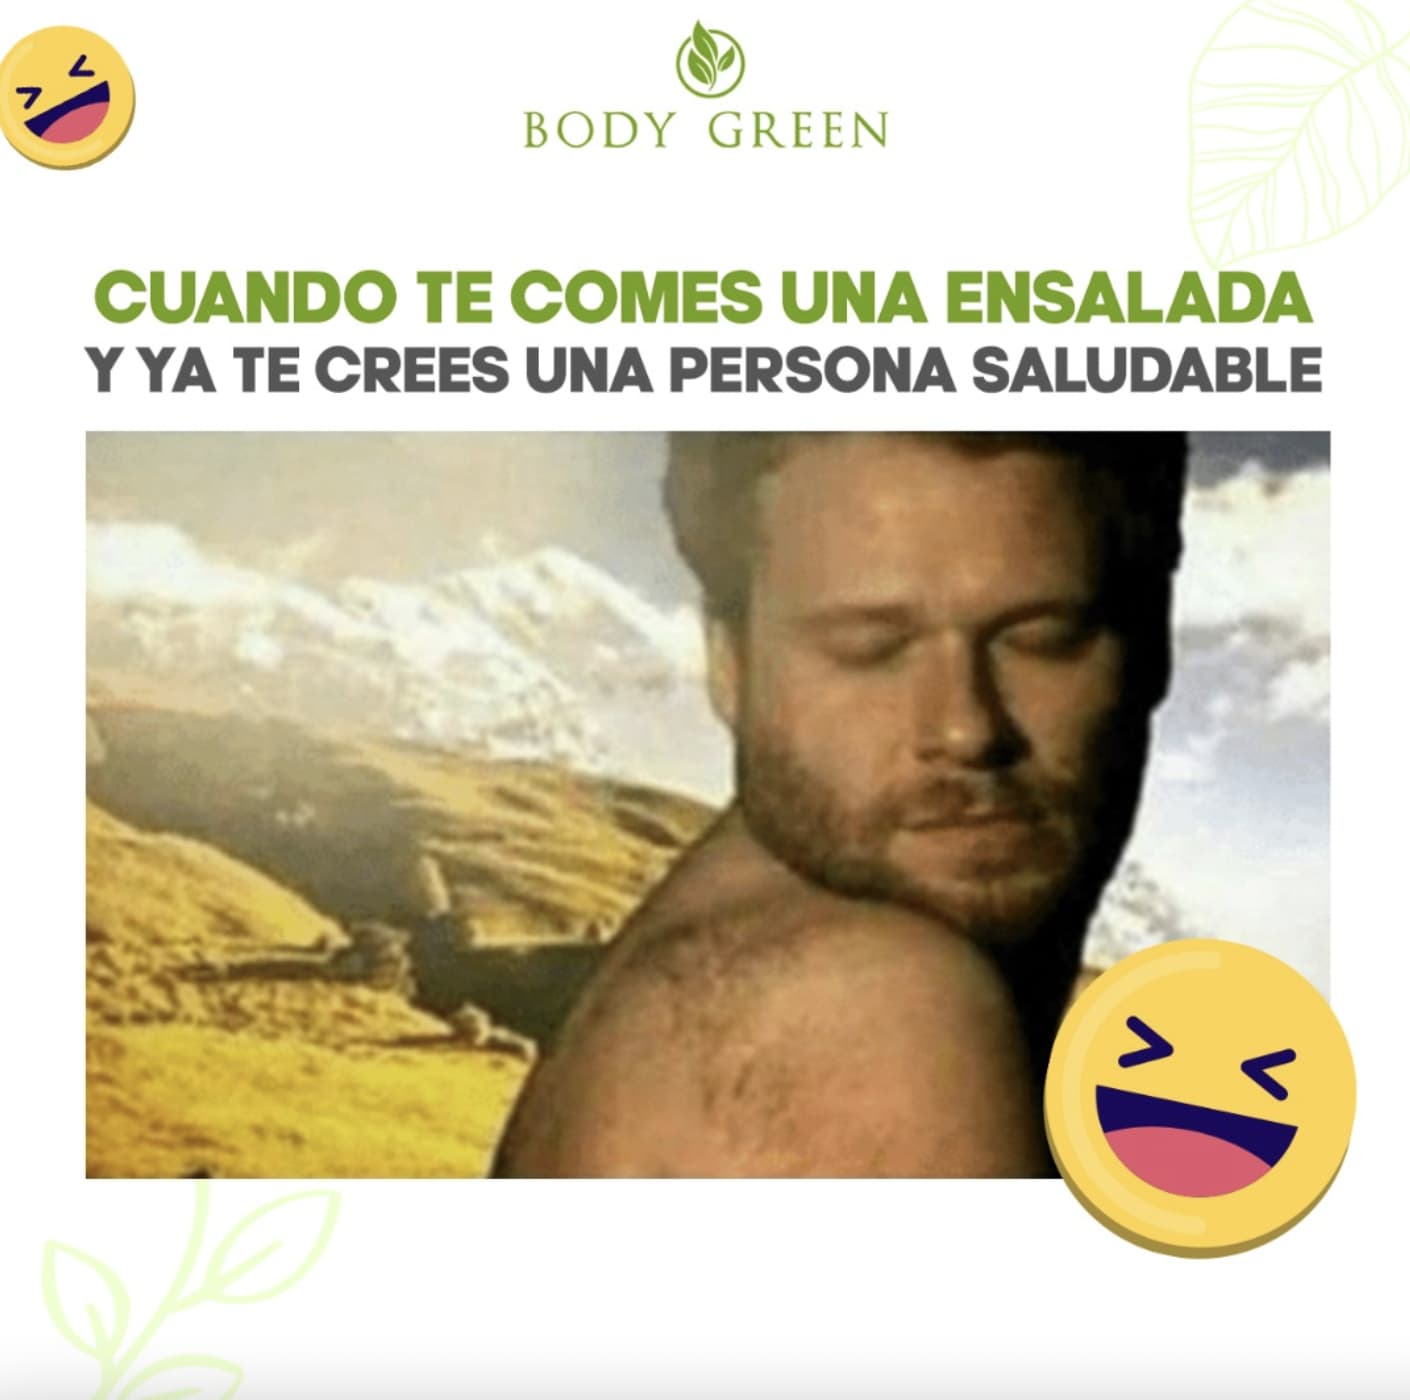 Ejemplo de meme marketing: Body Green